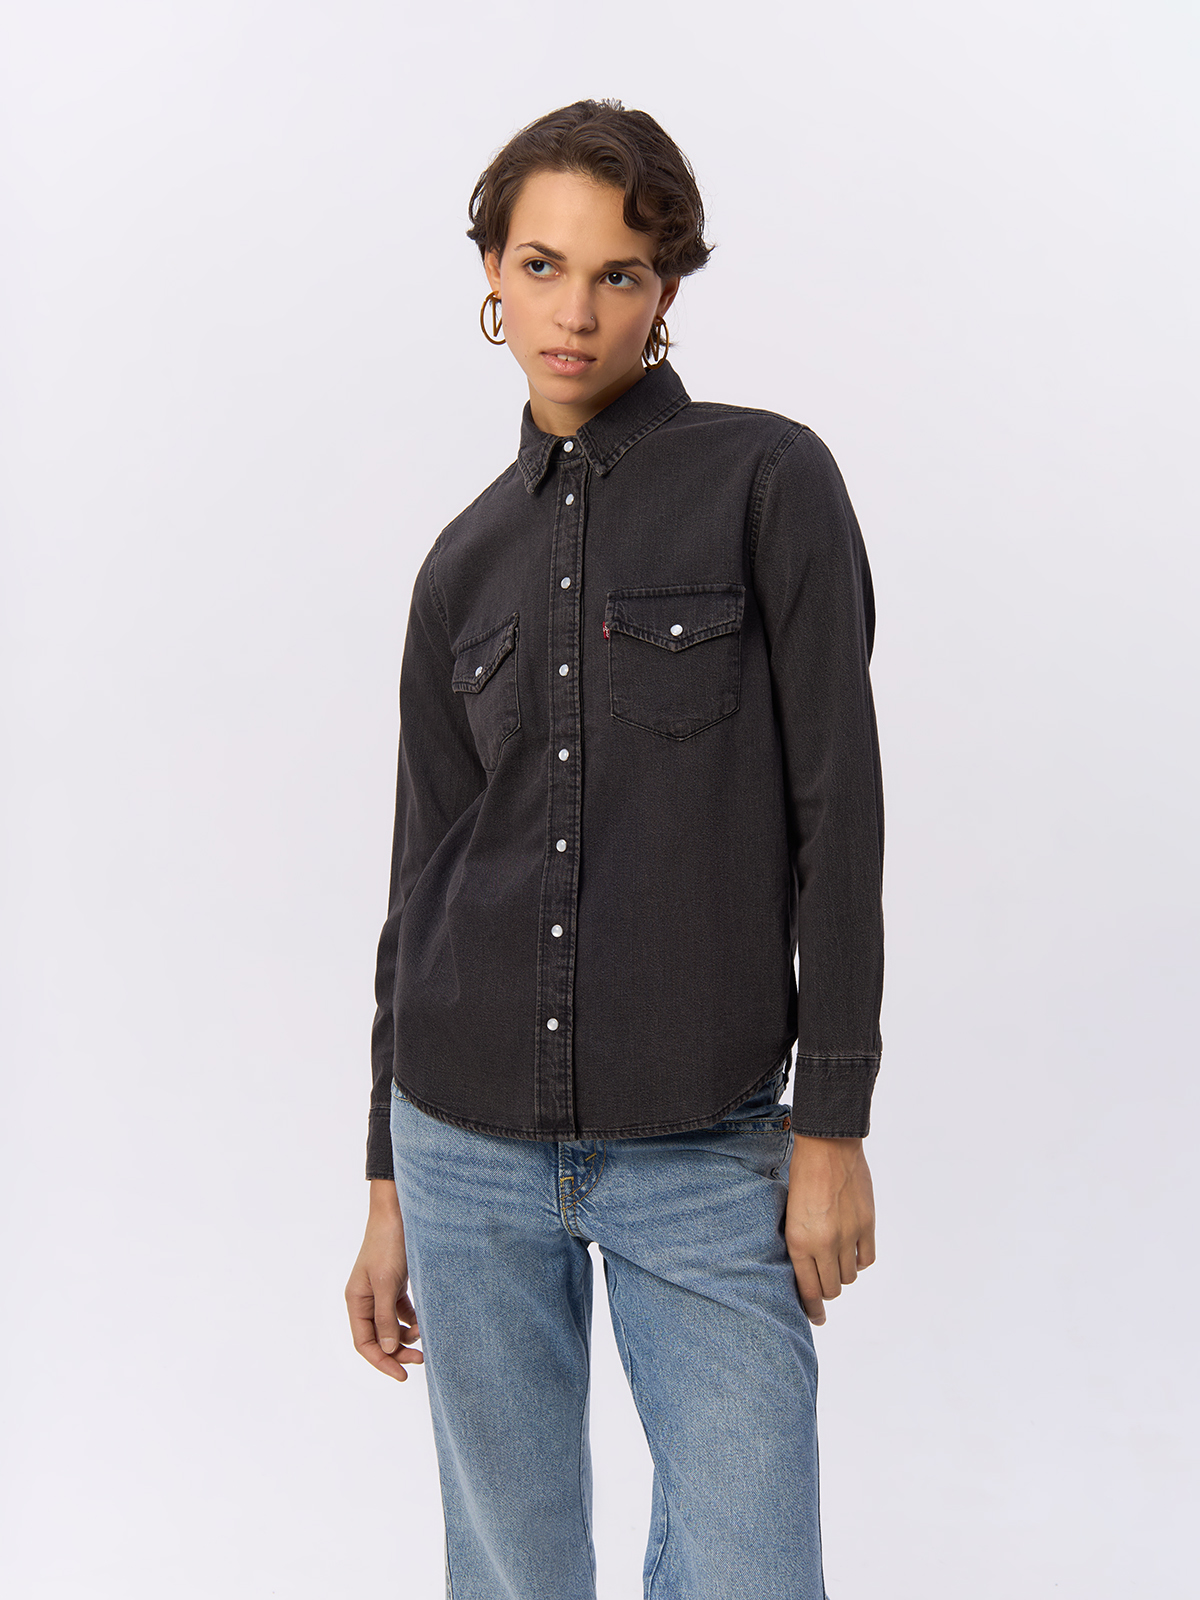 Рубашка женская Levi's Women Essential Western Shirt черная S